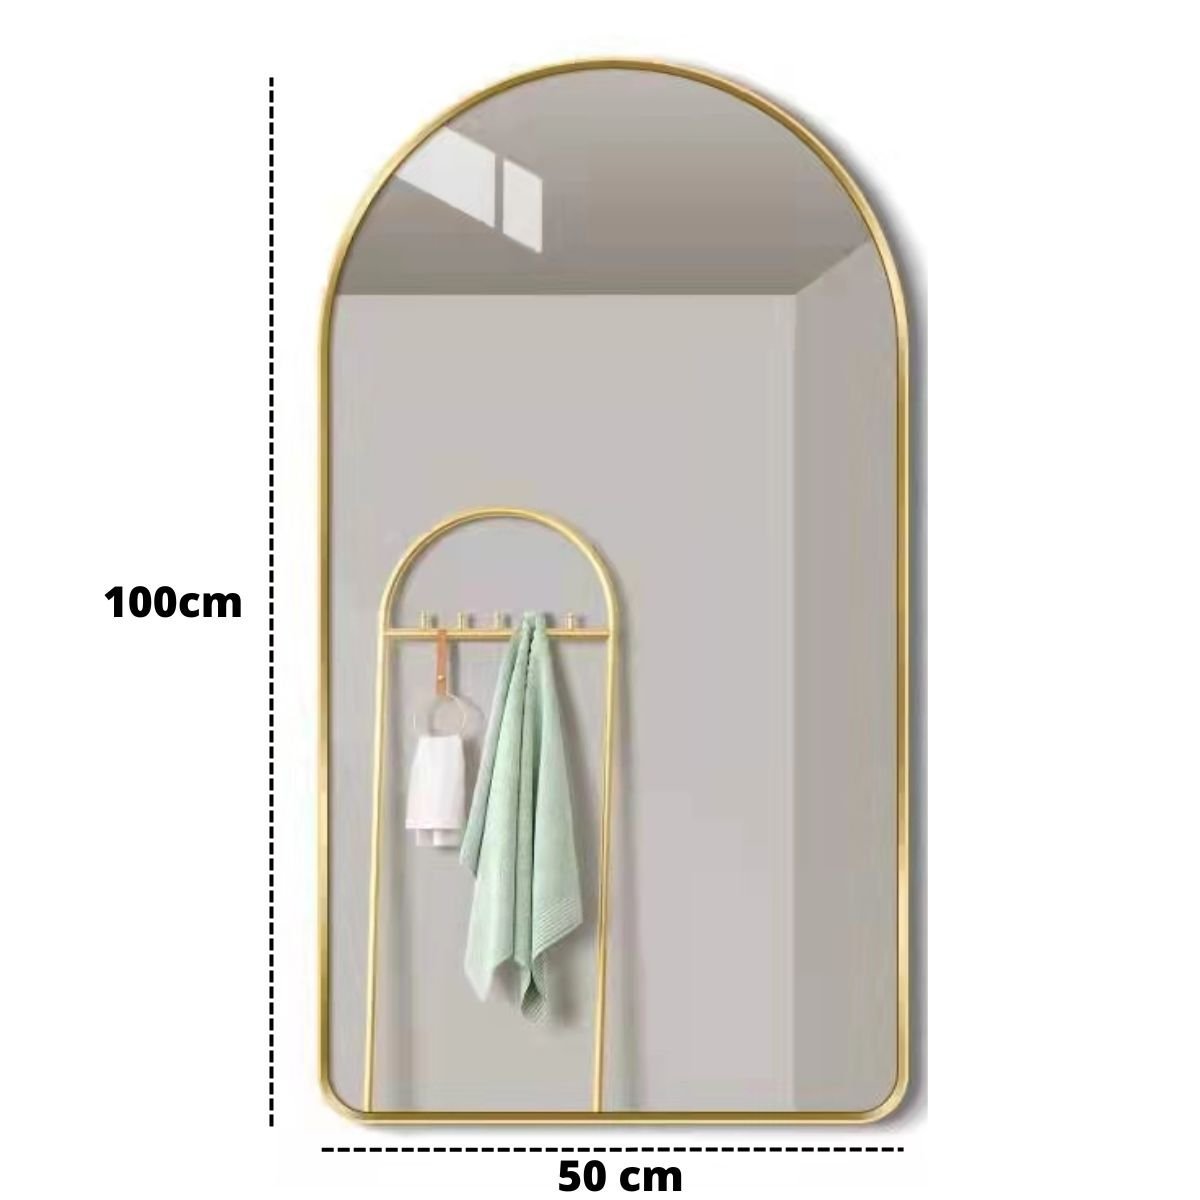 Espelho Decorativo Oval Janela Base Reta com Moldura Metal Bronze 100 X 50 Cm - 5